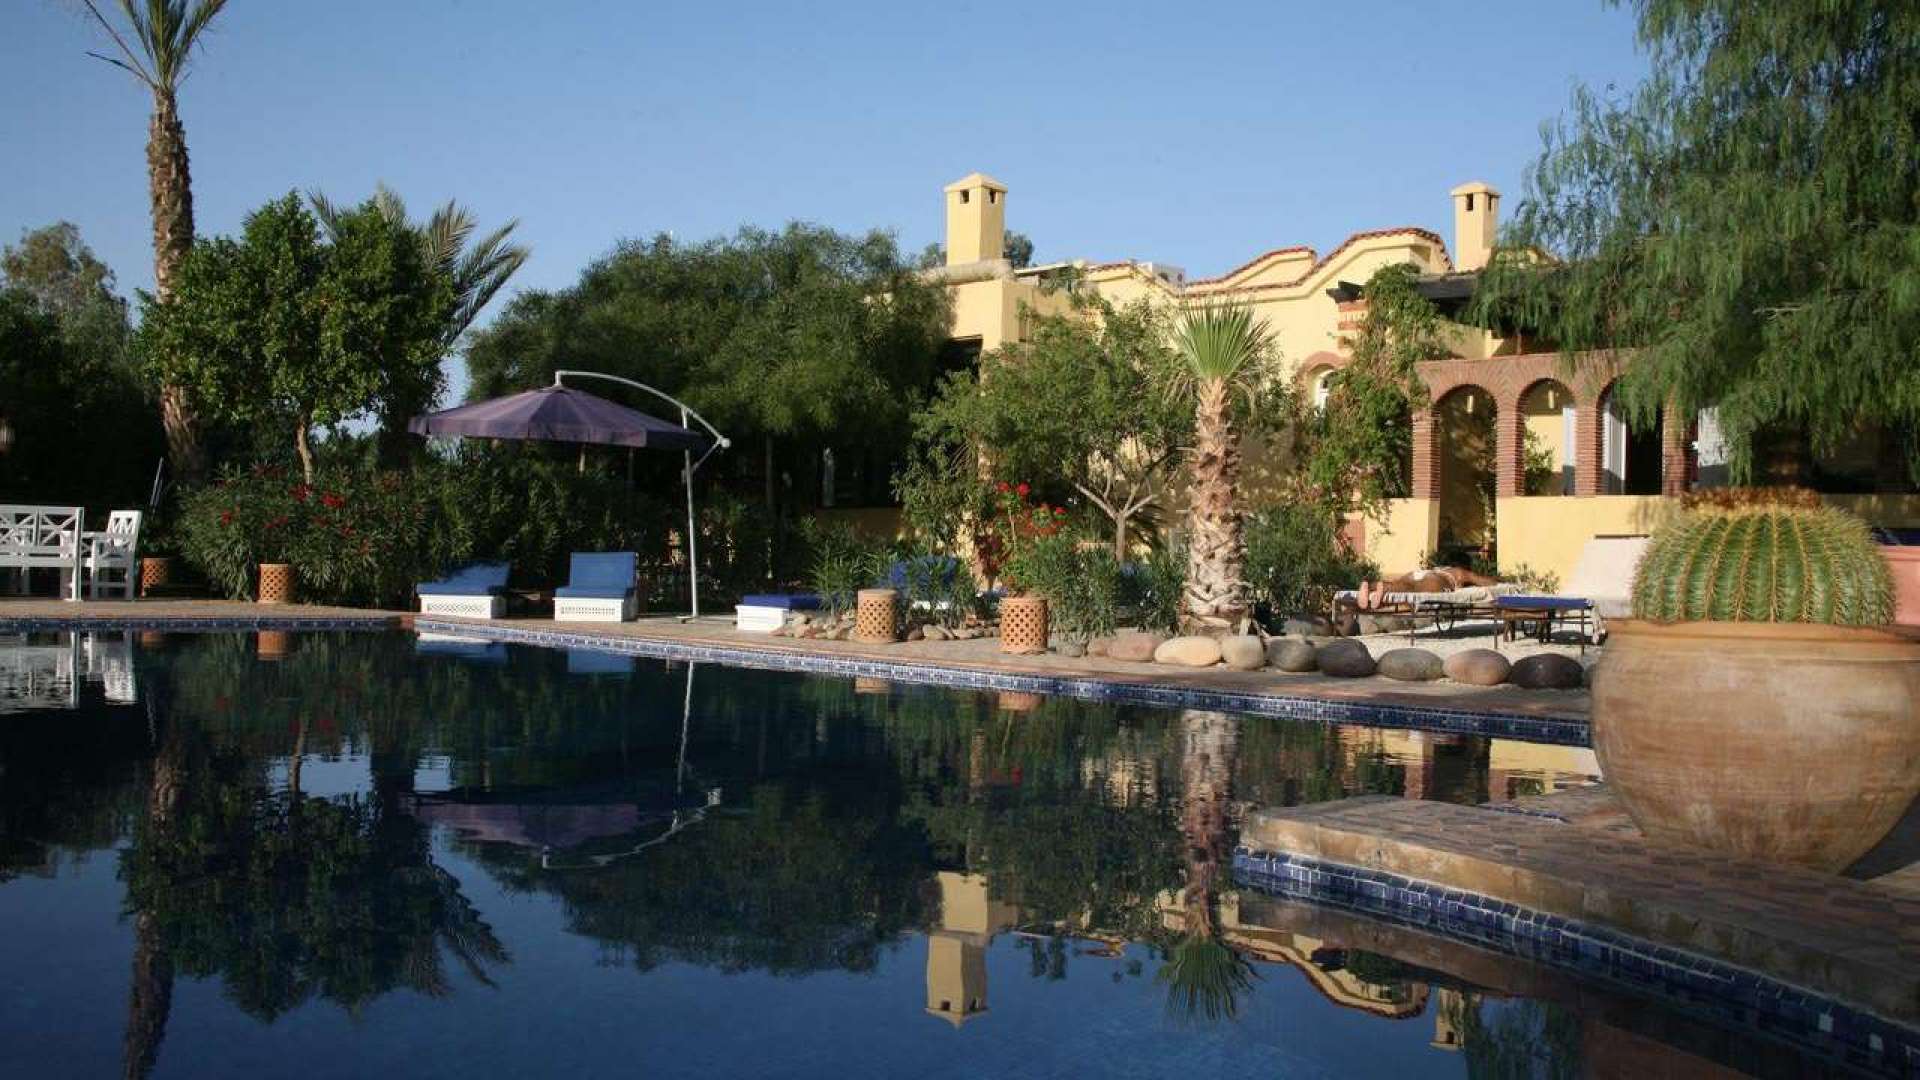 Location de vacances,Villa,Villa 10 chambres avec services hôteliers dans la Palmeraie,Marrakech,Palmeraie